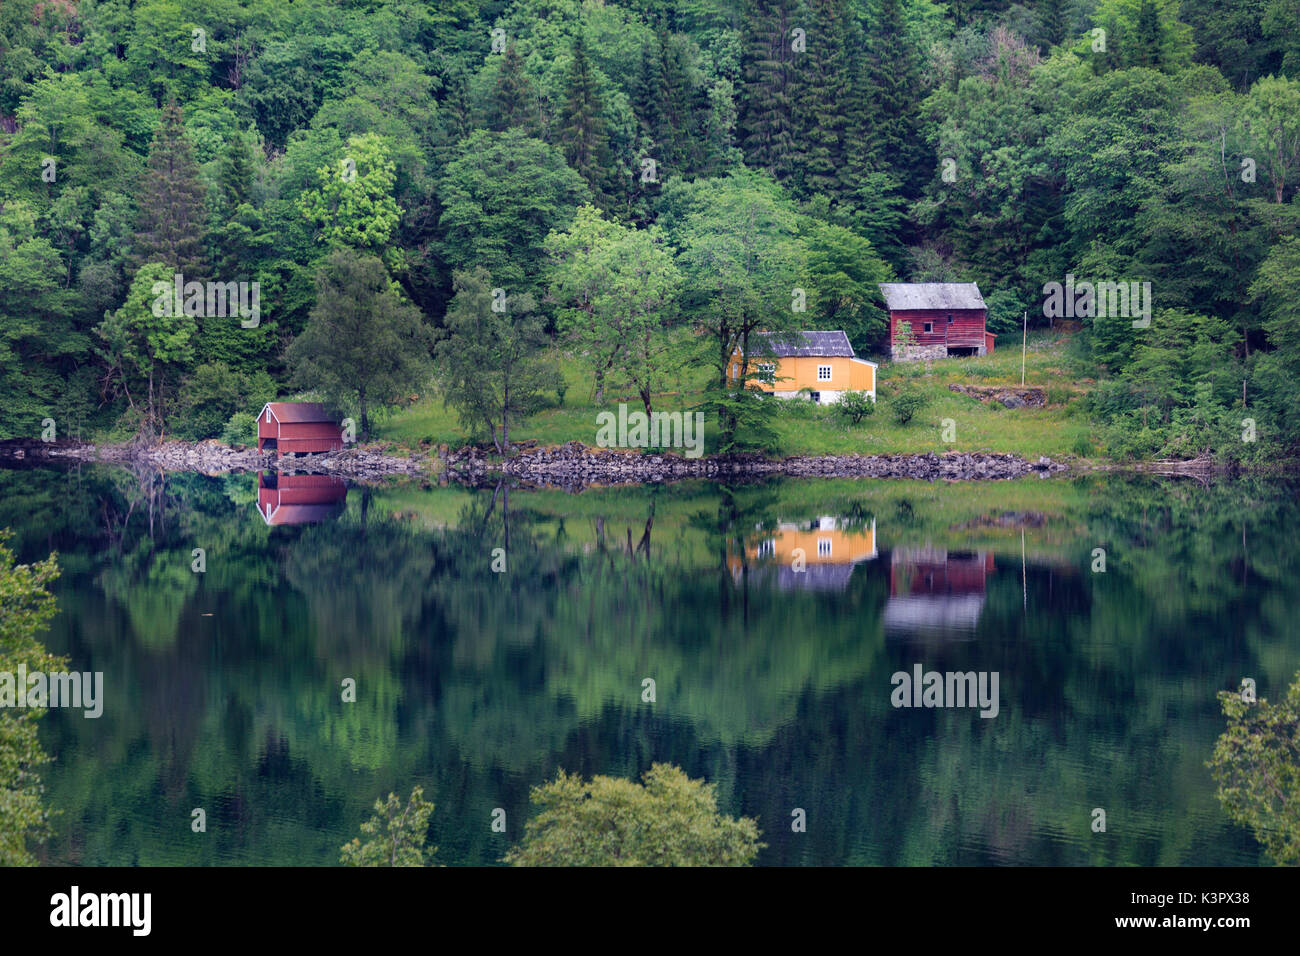 Parfait reflet de certaines maisons norvegia typique dans un lac à la fin du printemps, près de Bergen, Norvège Banque D'Images